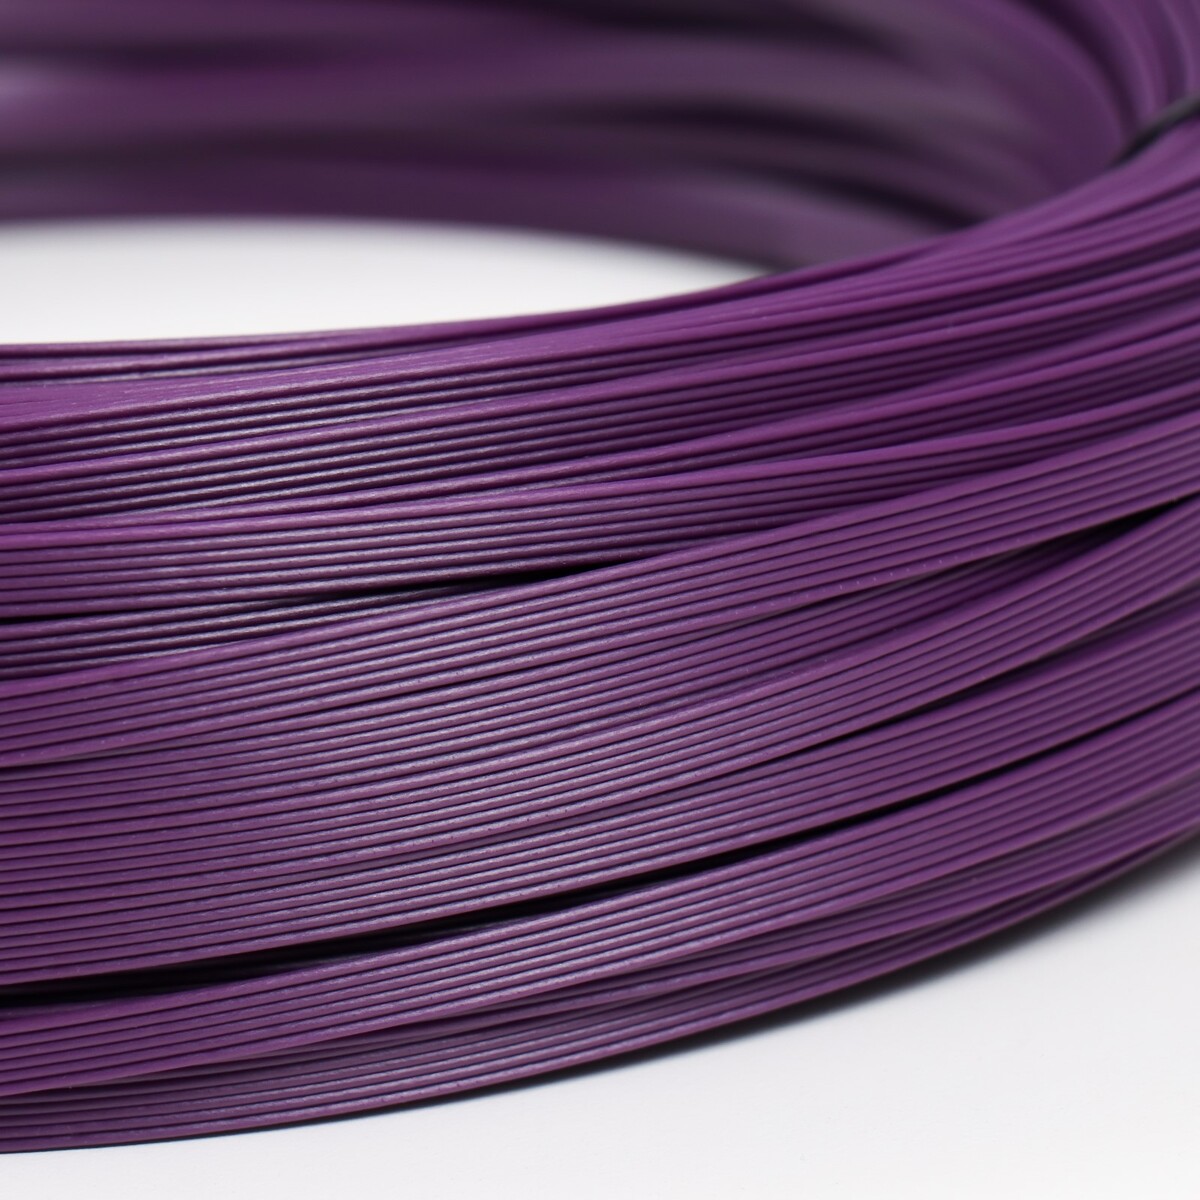 Ротанг искусственный 6 мм 100 м волна (фиолетовый) No brand 08556552 - фото 3